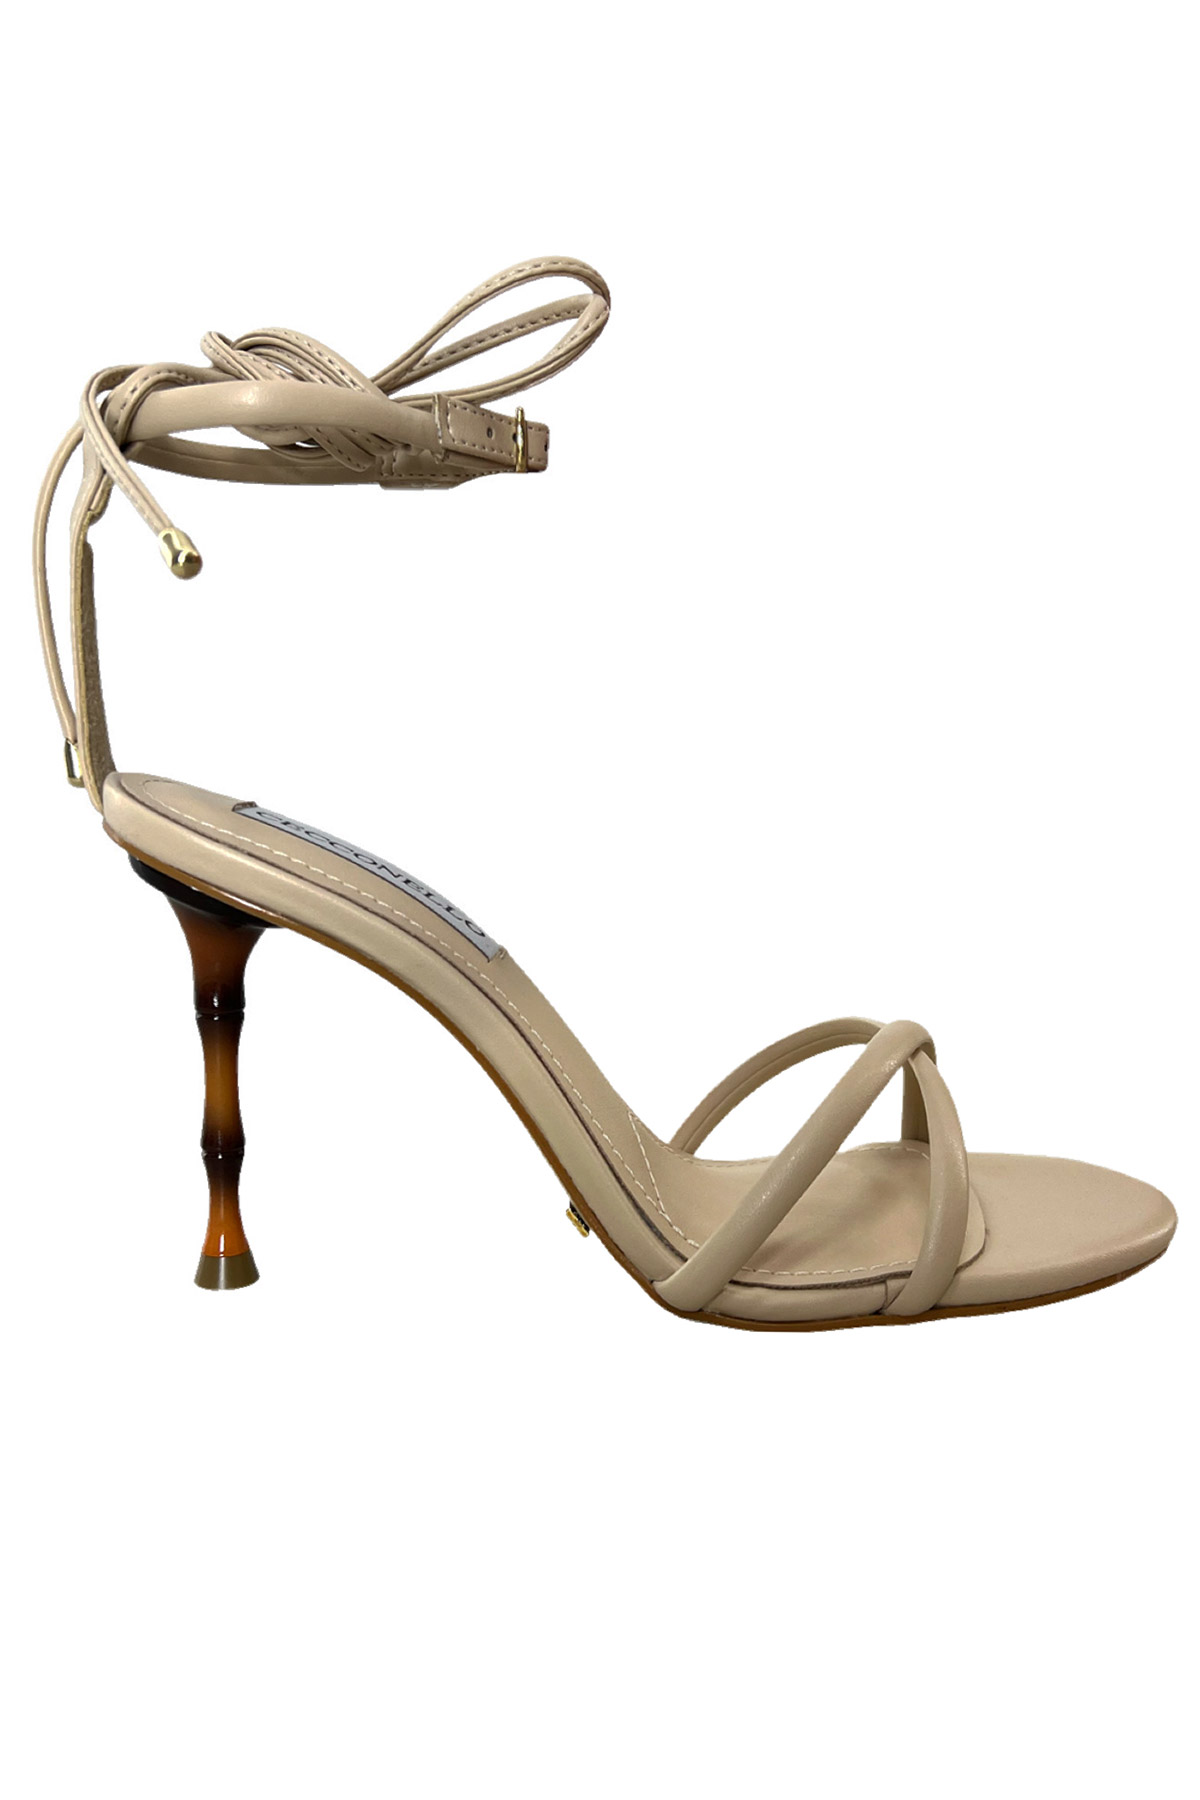 Sandalo donna con tacco in bamboo 9cm cavigliera regolabile e laccio fasce in punta intrecciate